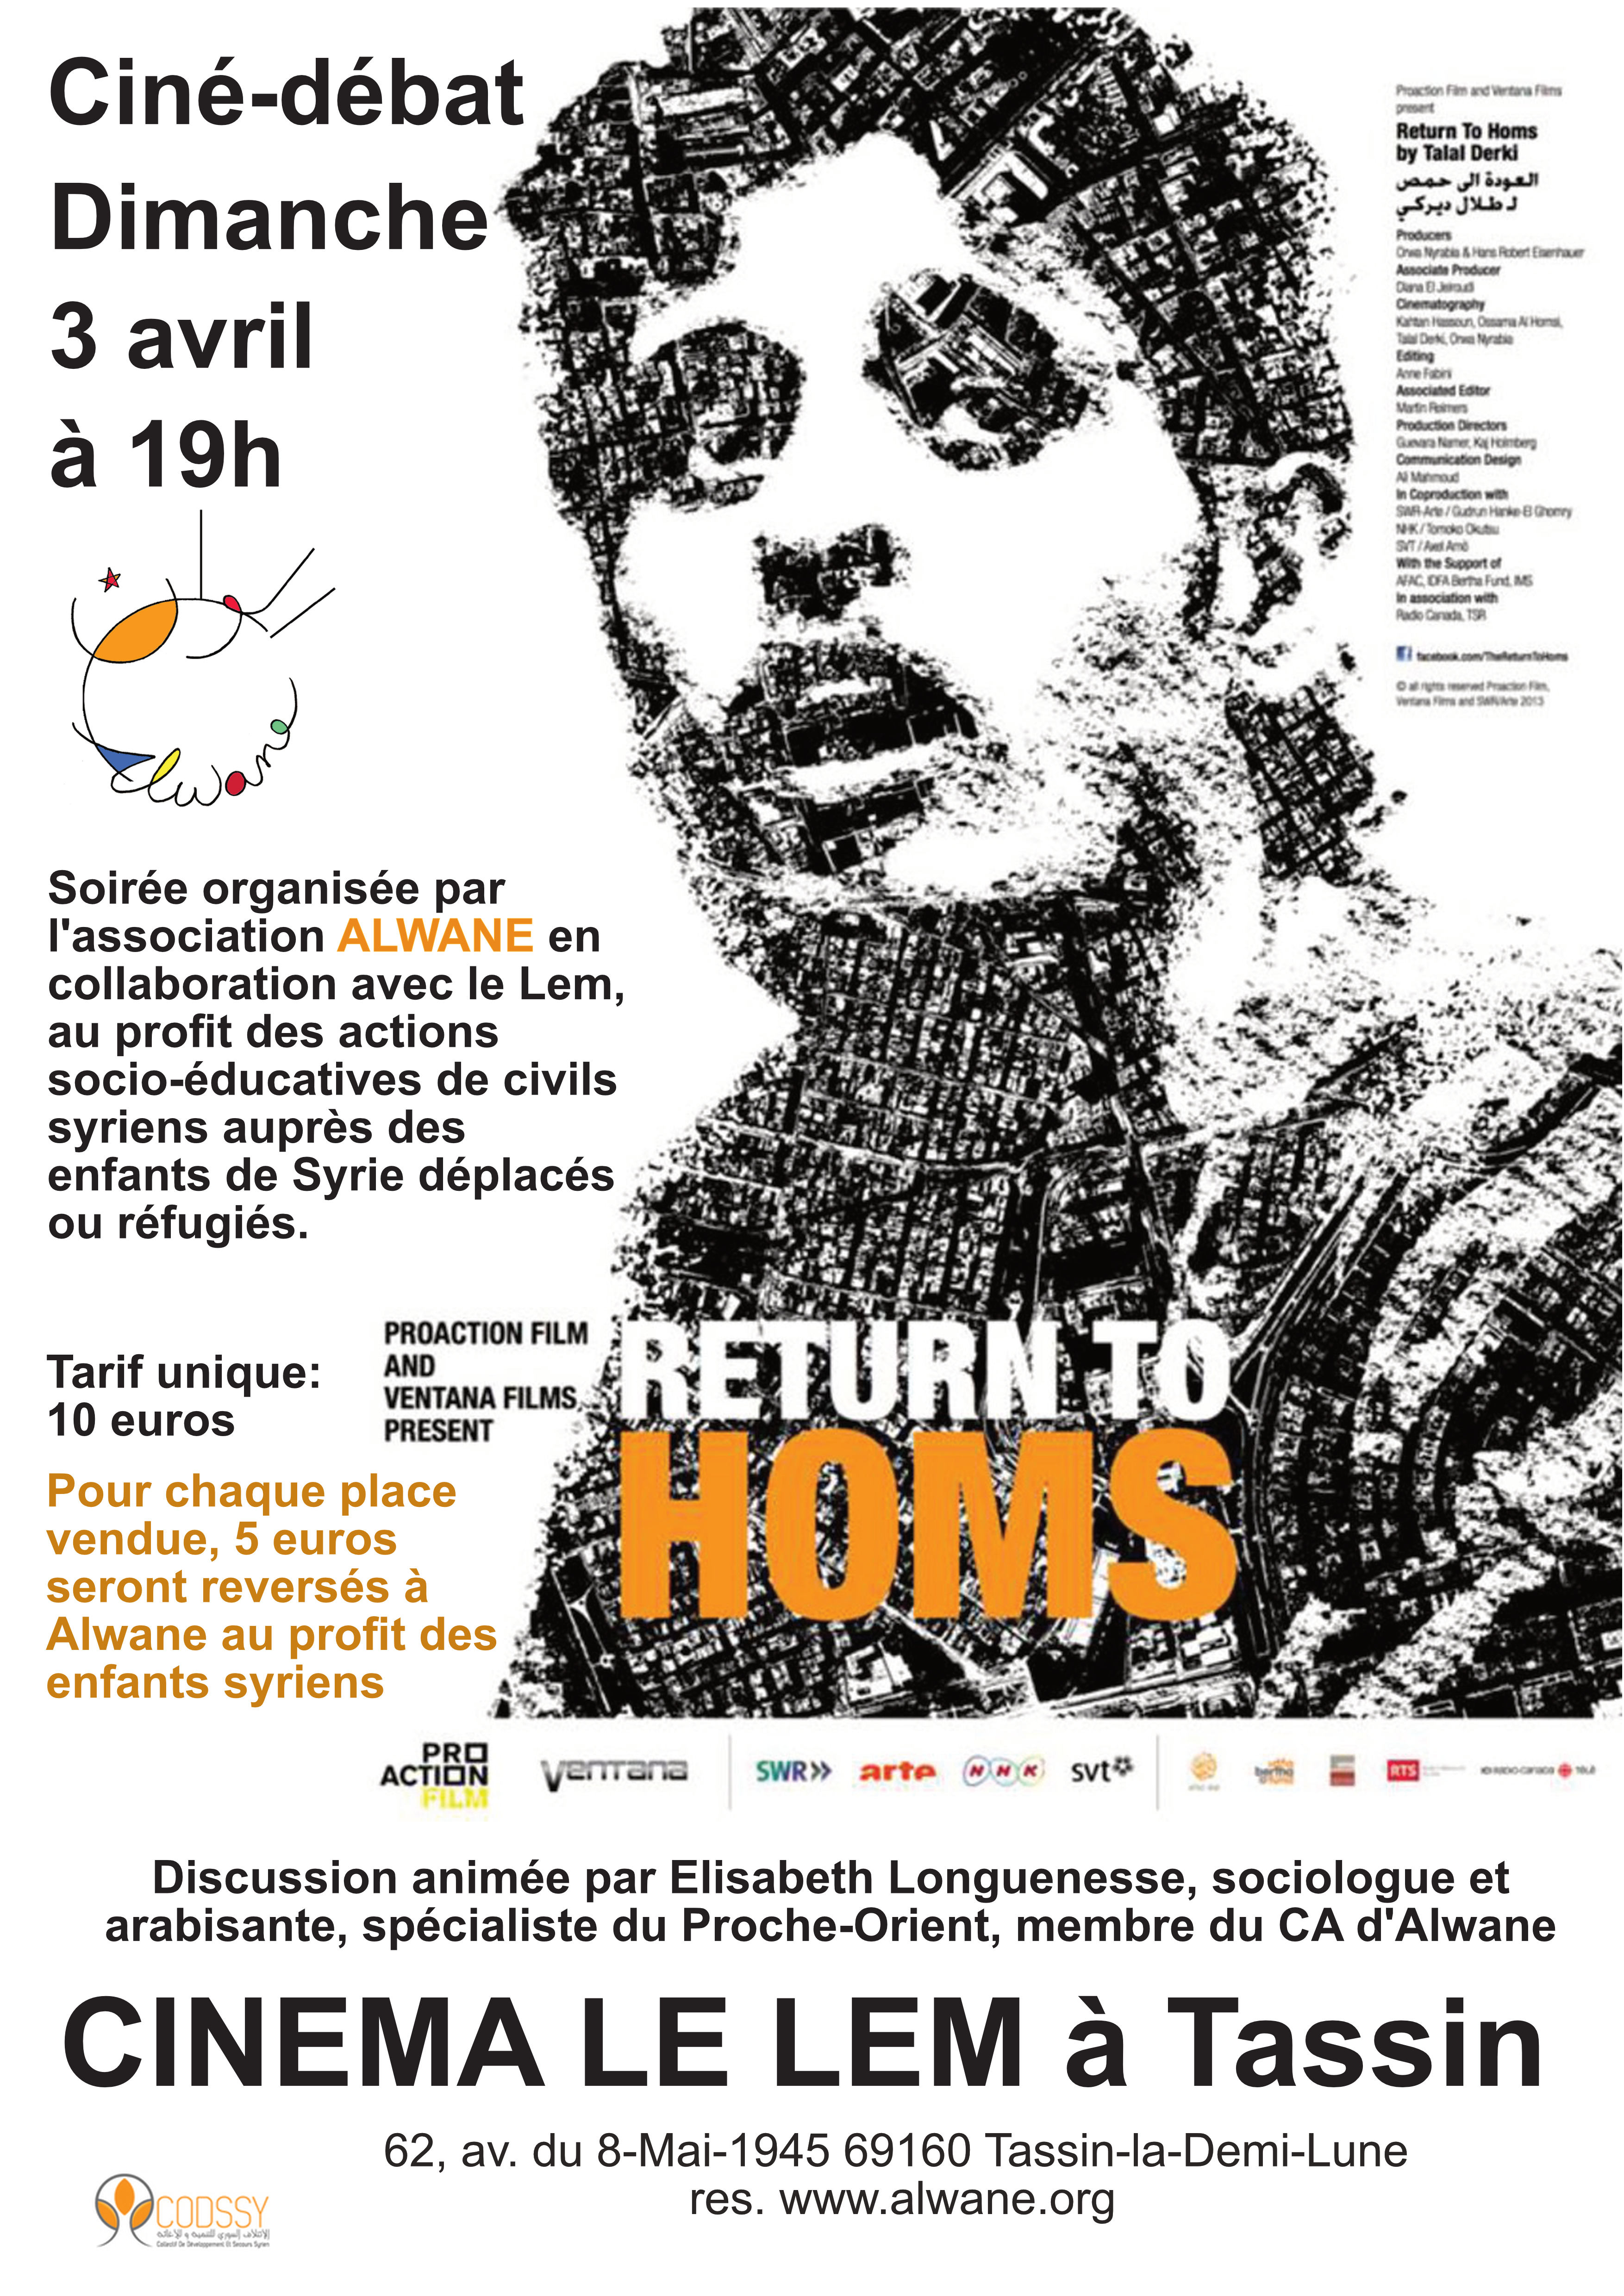 Ciné-débat "Retour à Homs" au cinéma Le Lem